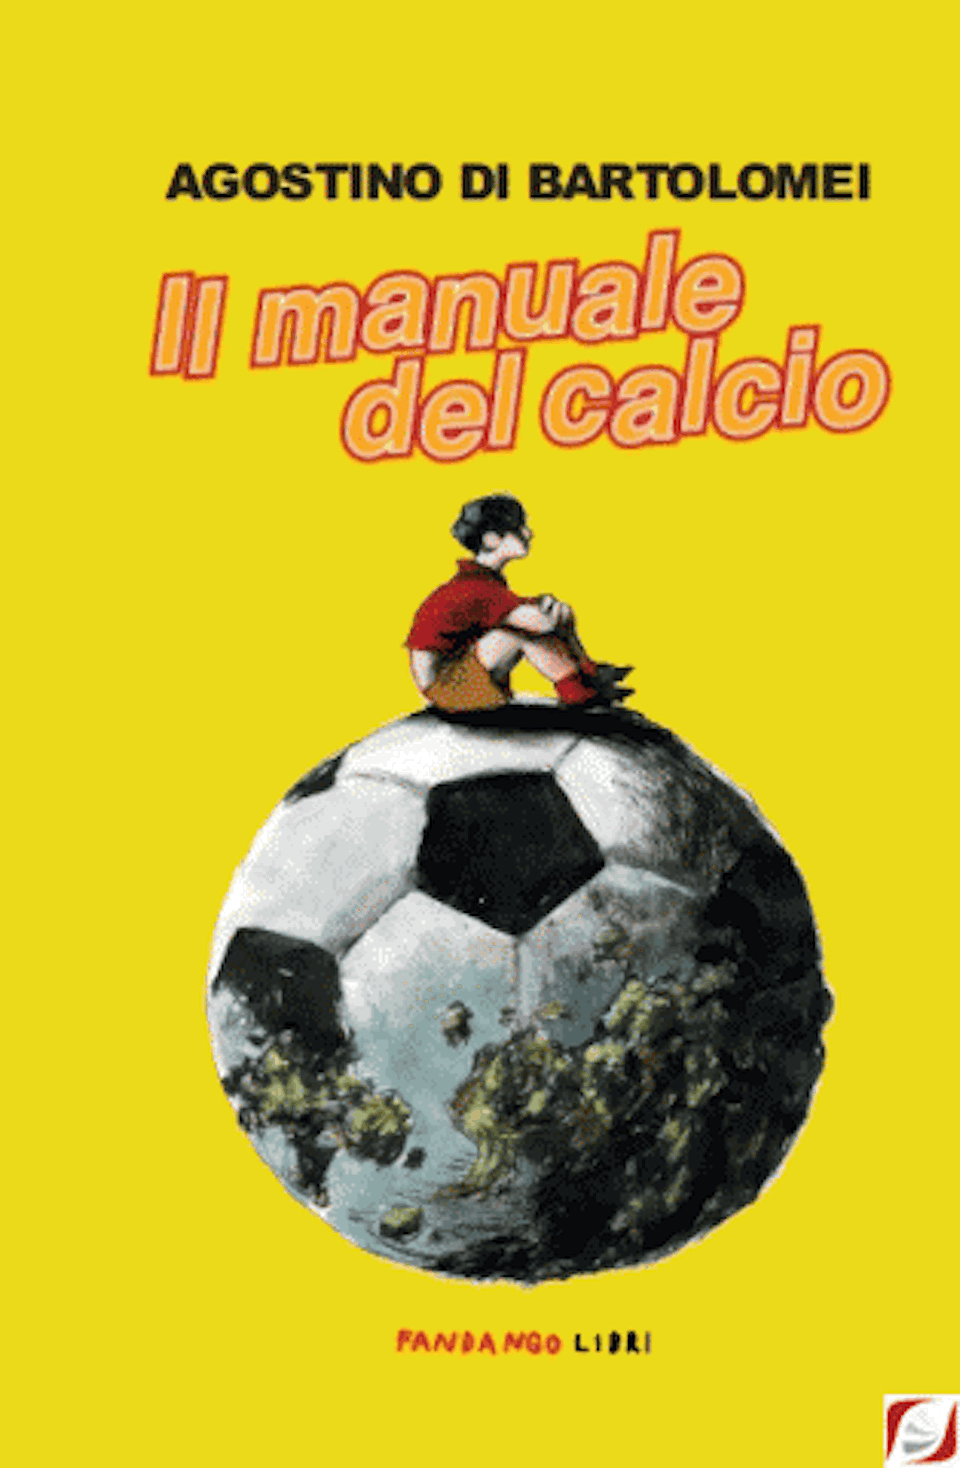 Il-manuale-del-calcio-cover-piatto